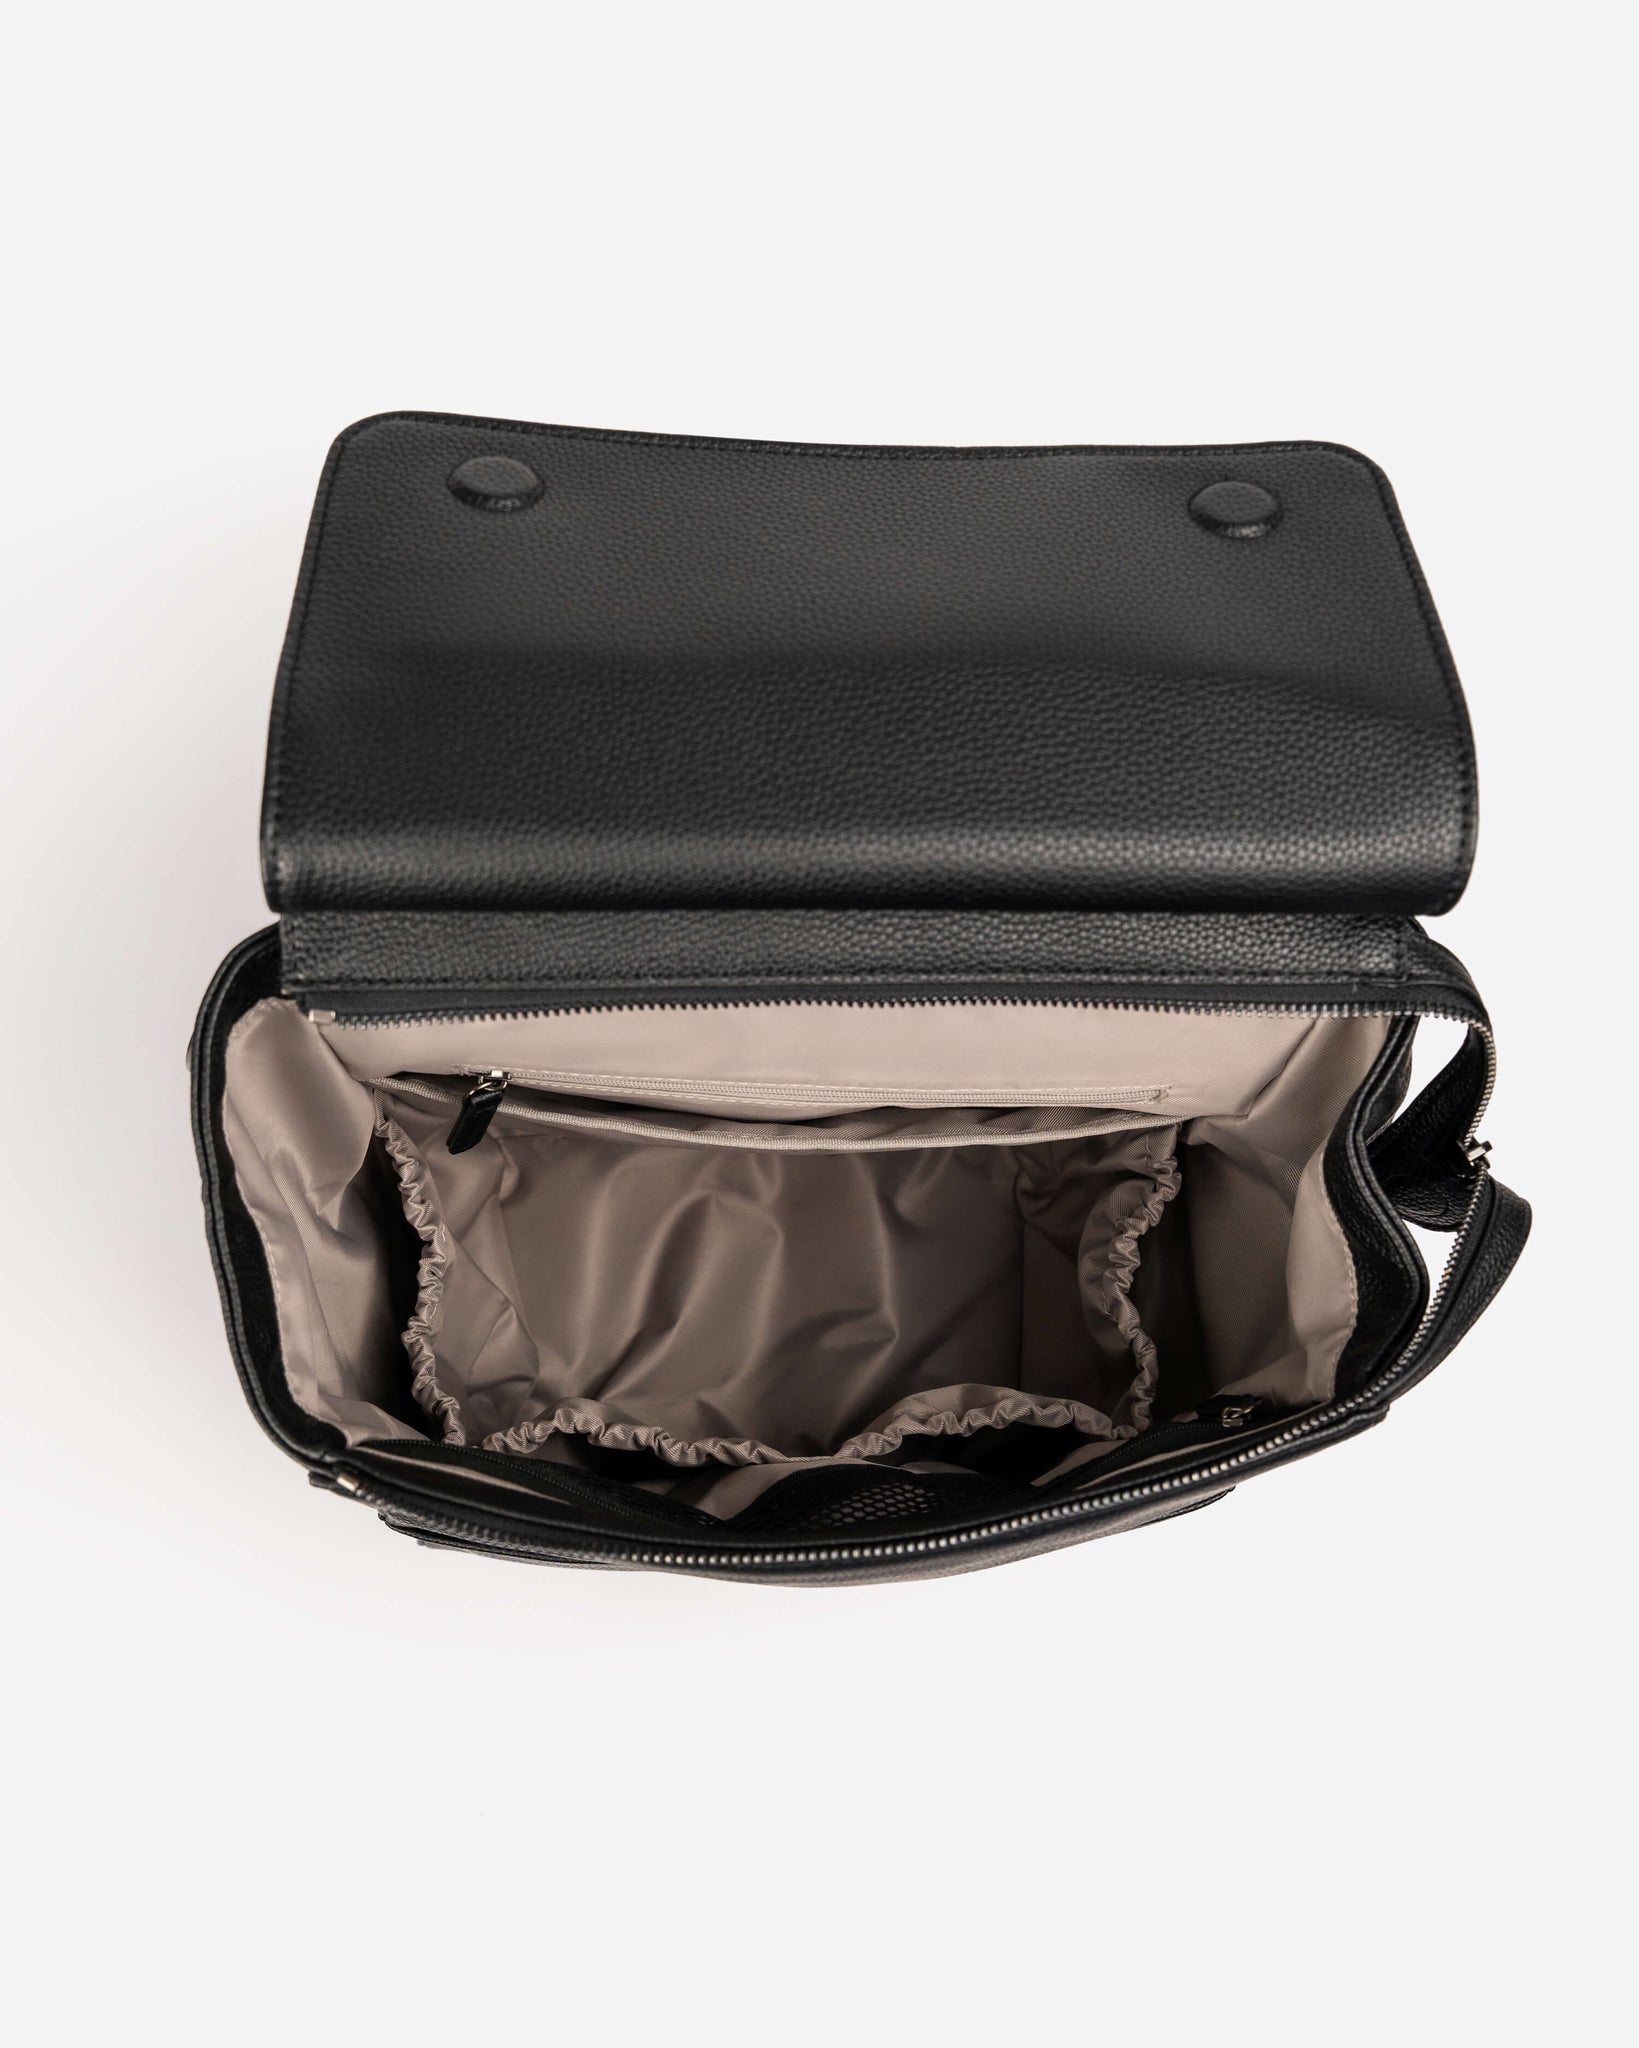 Archy Modular Camera Backpack V2 (Black)